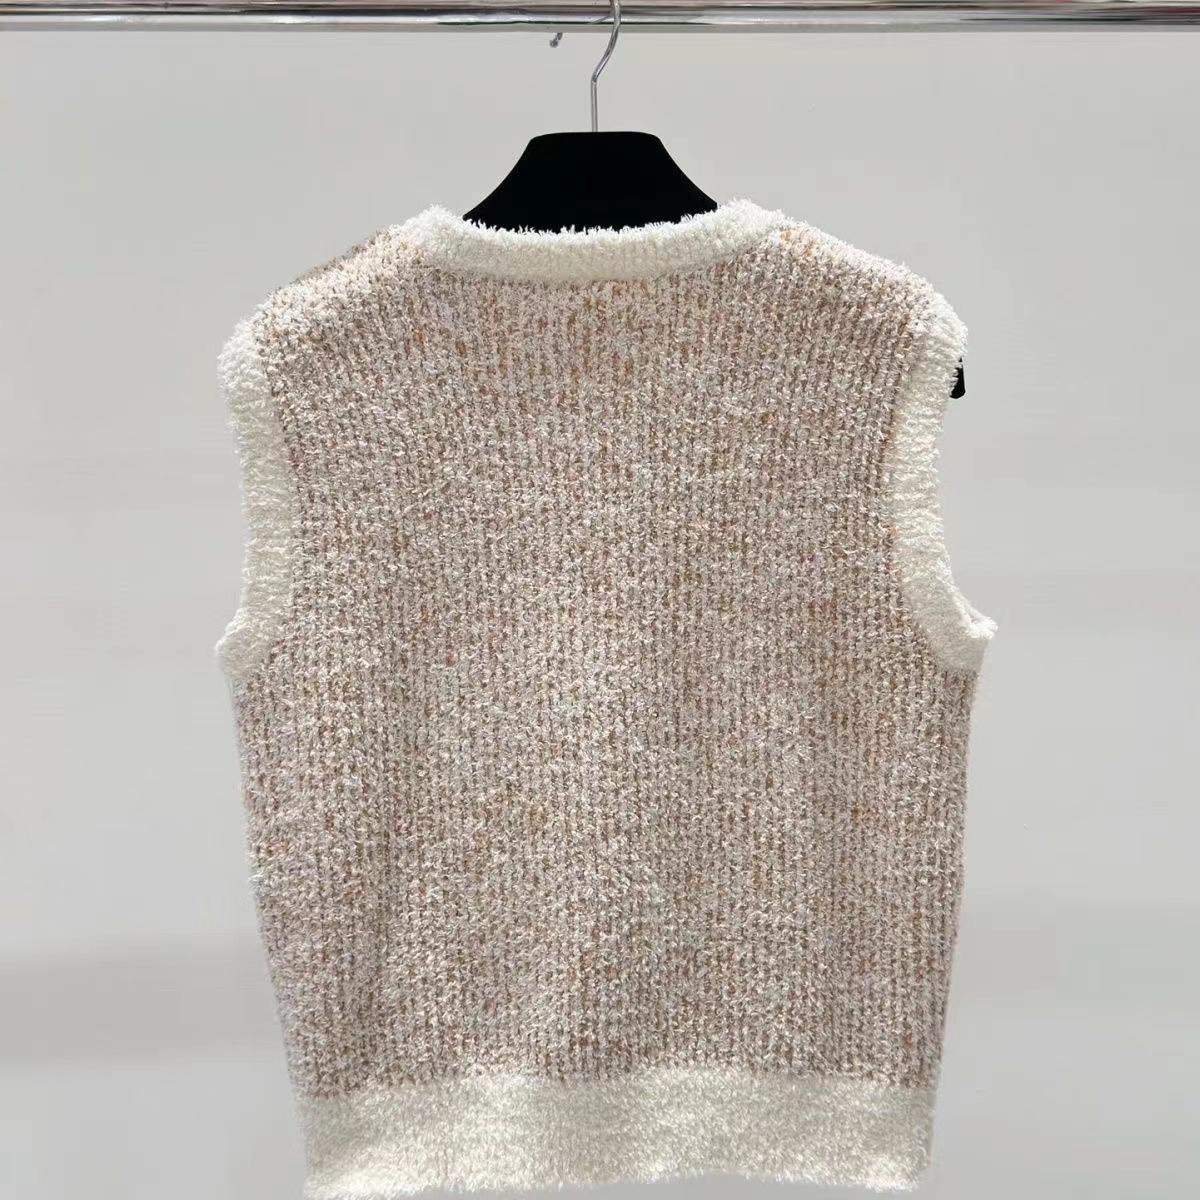 Kadın Sweaters Tasarımcı Örgü Külot Rölyef Harfleri Örgü Kolsuz Kazak Kış Bahar Giyim Lüks Yelek Tank Top Pinkwing Yüksek Kalite